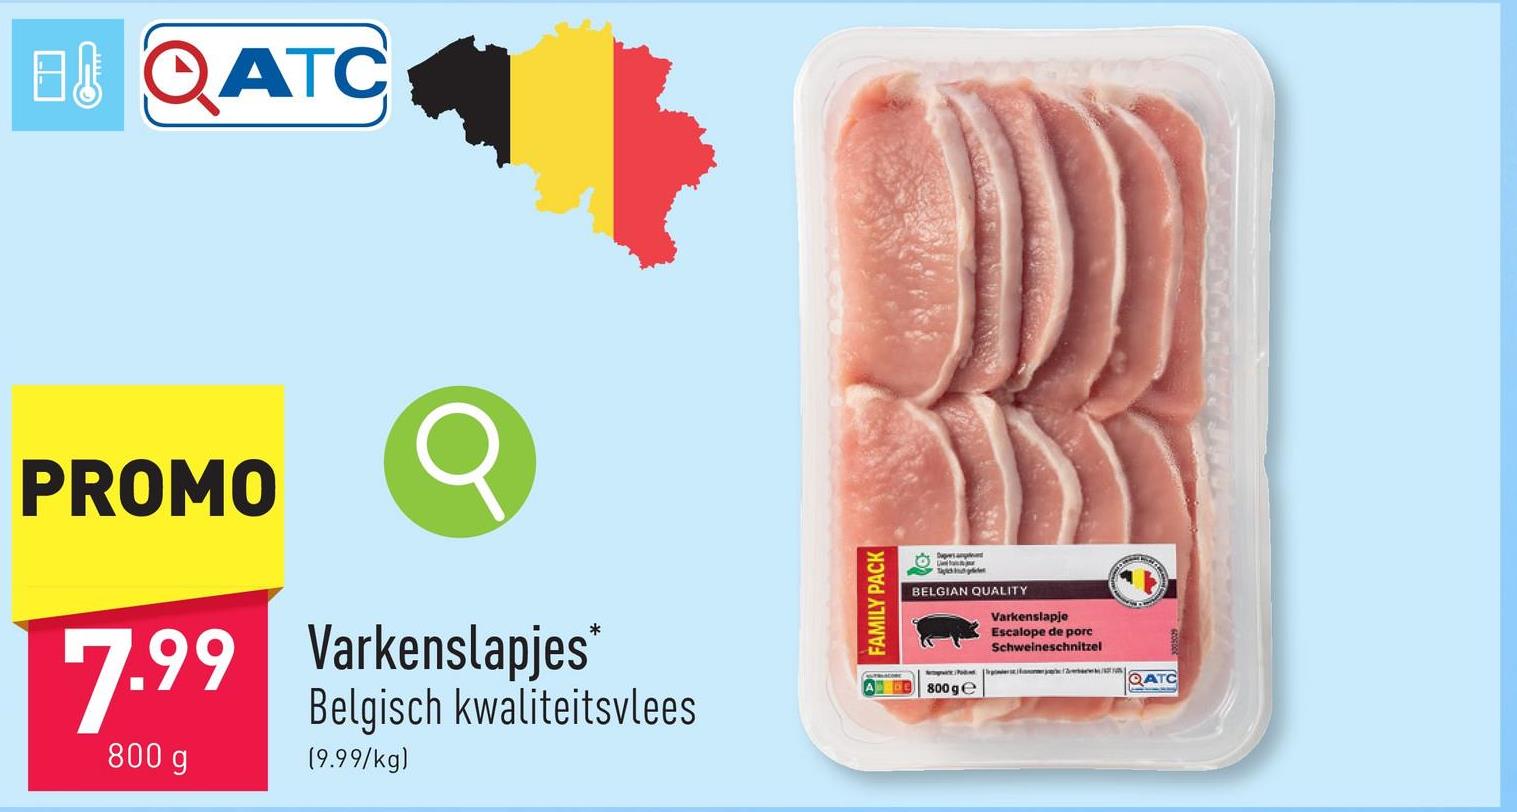 Varkenslapjes malse en sappige varkenslapjes uit de rug van het varken, Belgisch kwaliteitsvlees